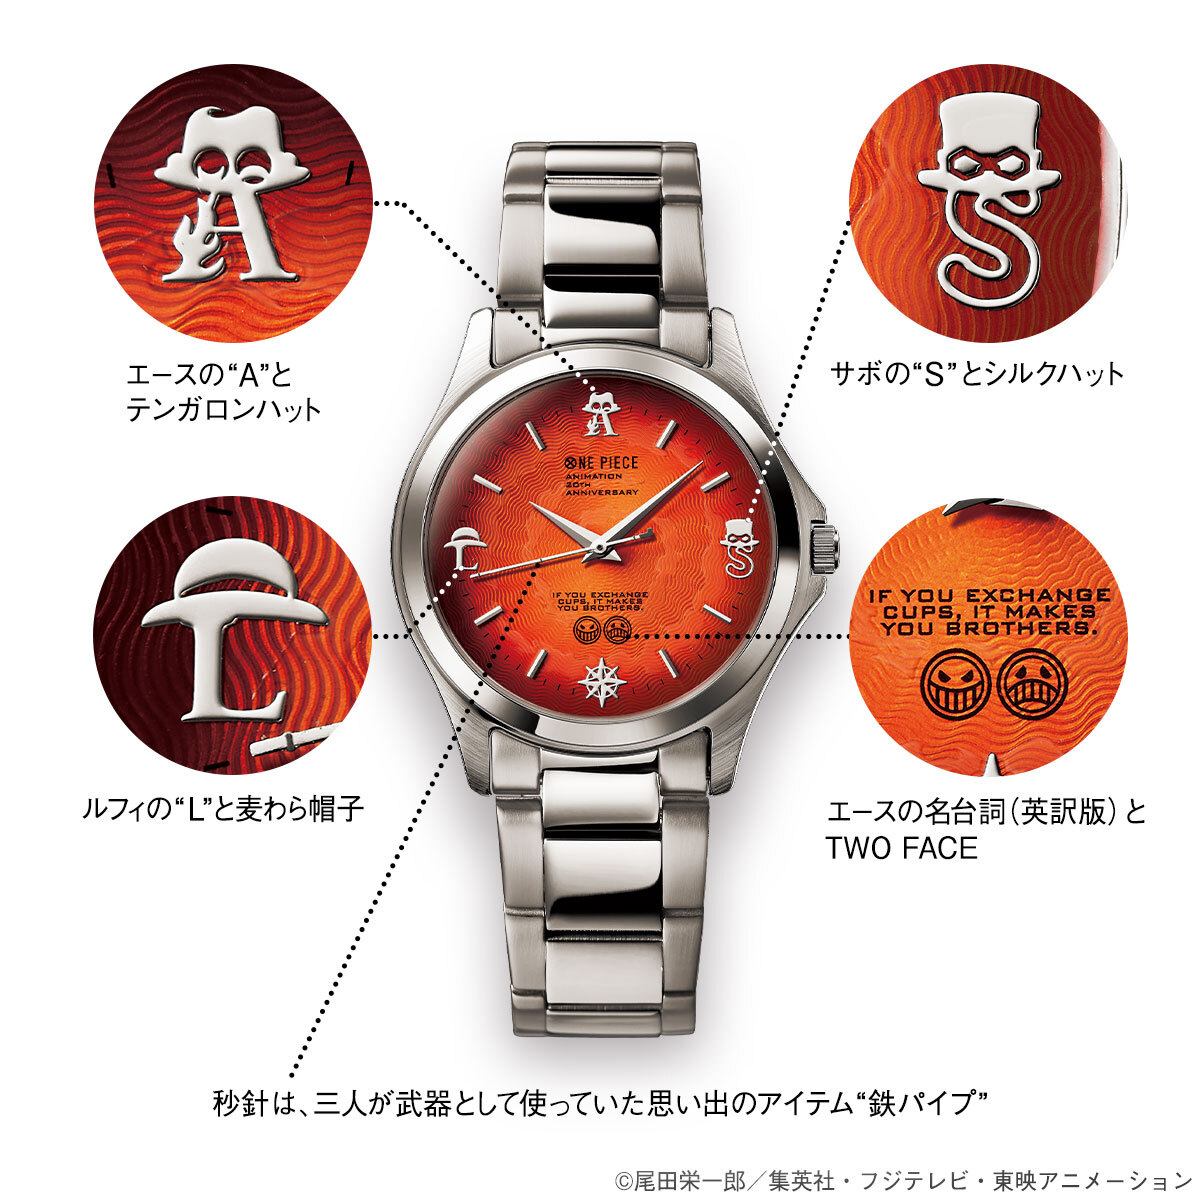 時をこえても変わらない絆と 受け継がれる炎の意志 One Piece からエース サボ ルフィ 三兄弟 の絆をイメージした腕時計が登場 インペリアル エンタープライズ株式会社のプレスリリース